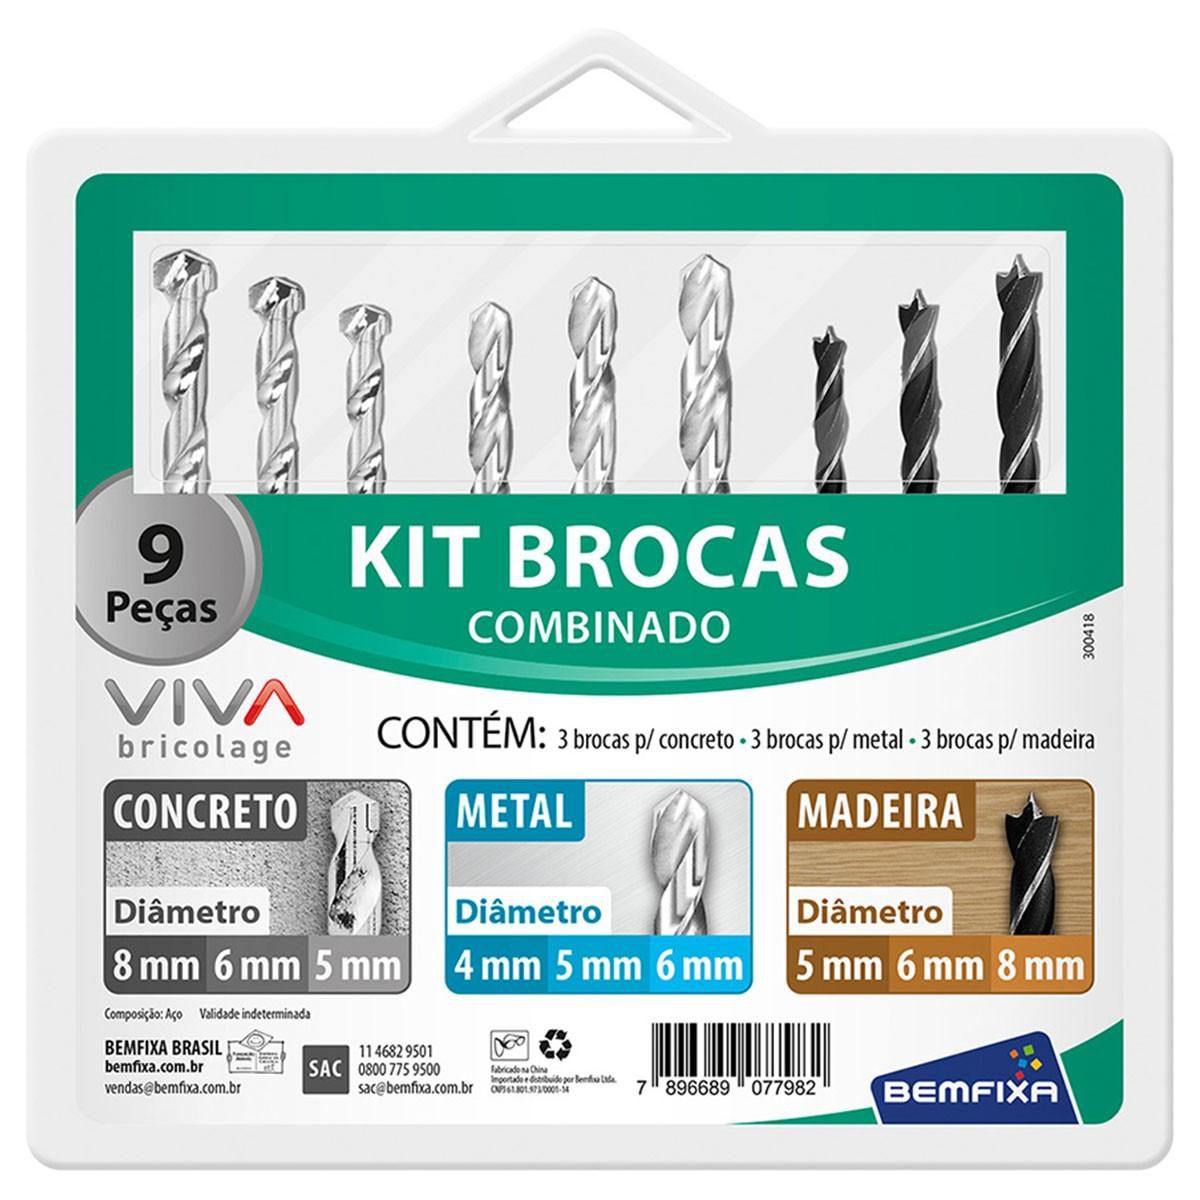 Kit Brocas Combinado 9 Peças BemFixa Viva 7798